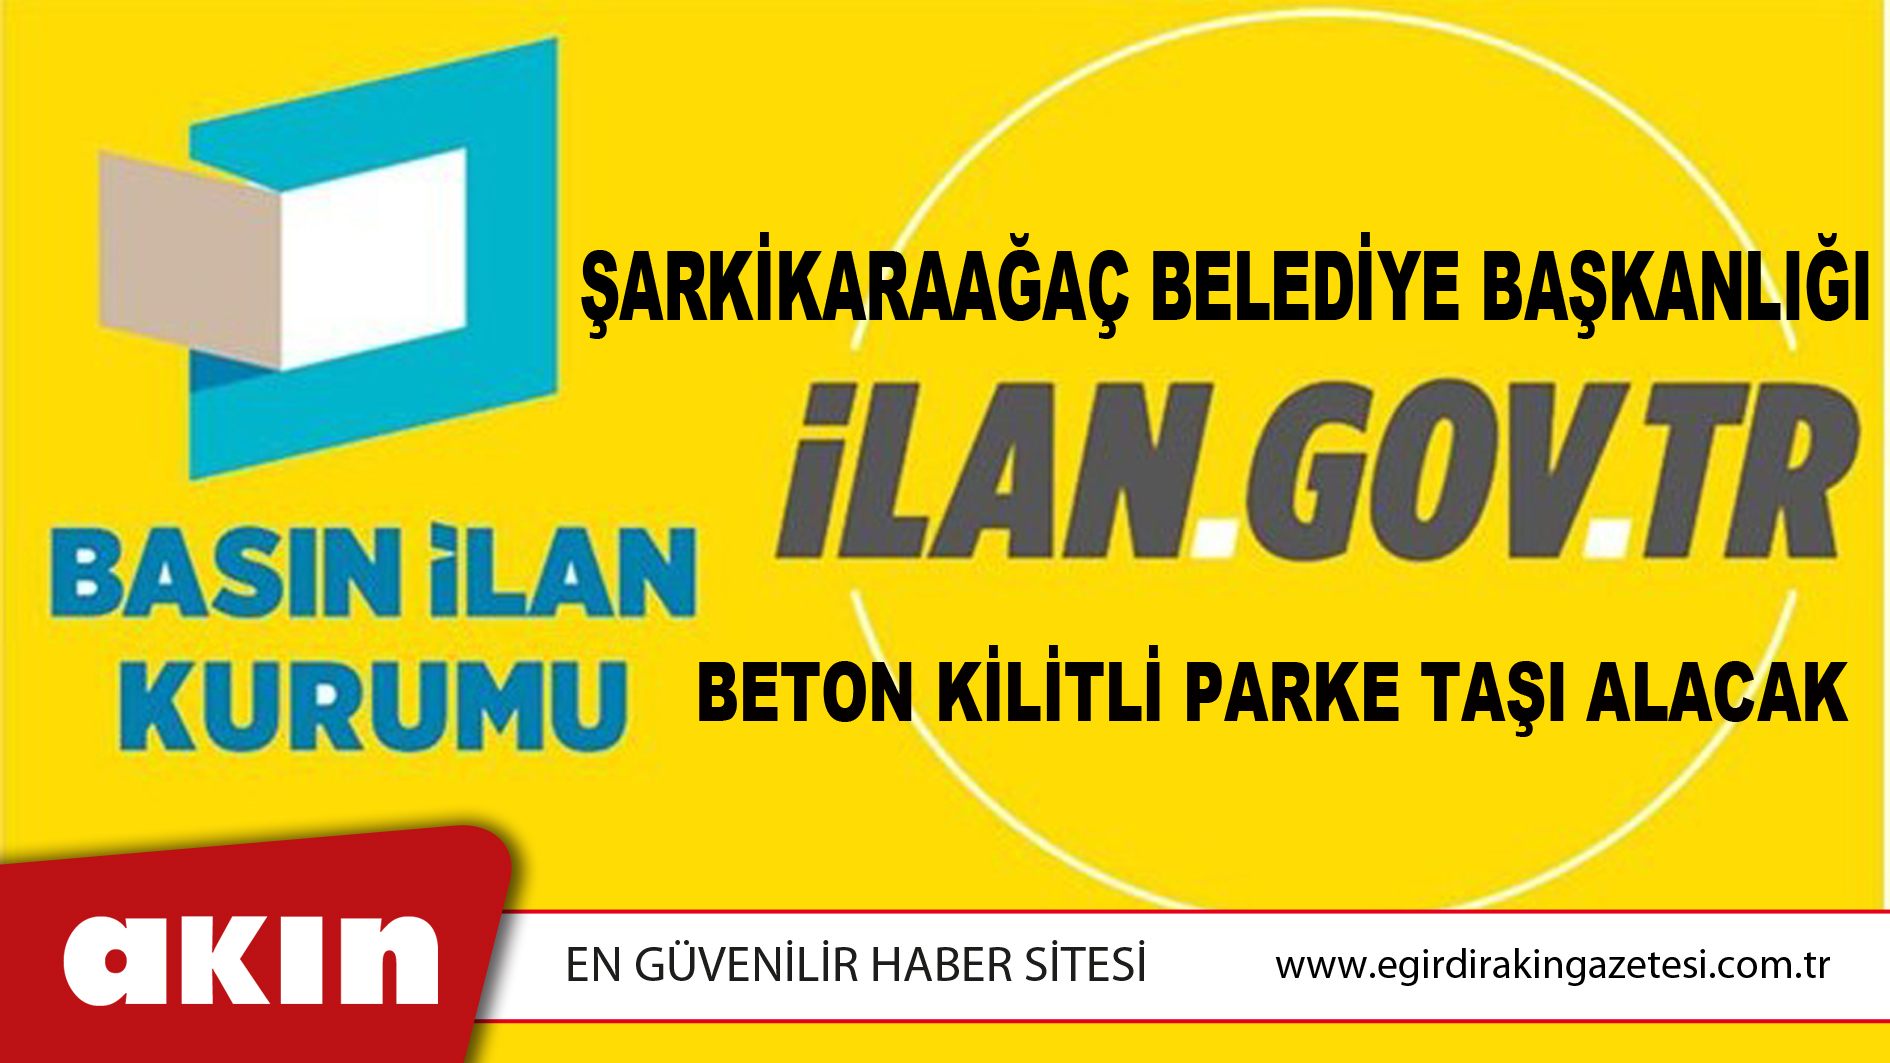 Şarkikaraağaç Belediye Başkanlığı Beton Kilitli Parke Taşı Alacak